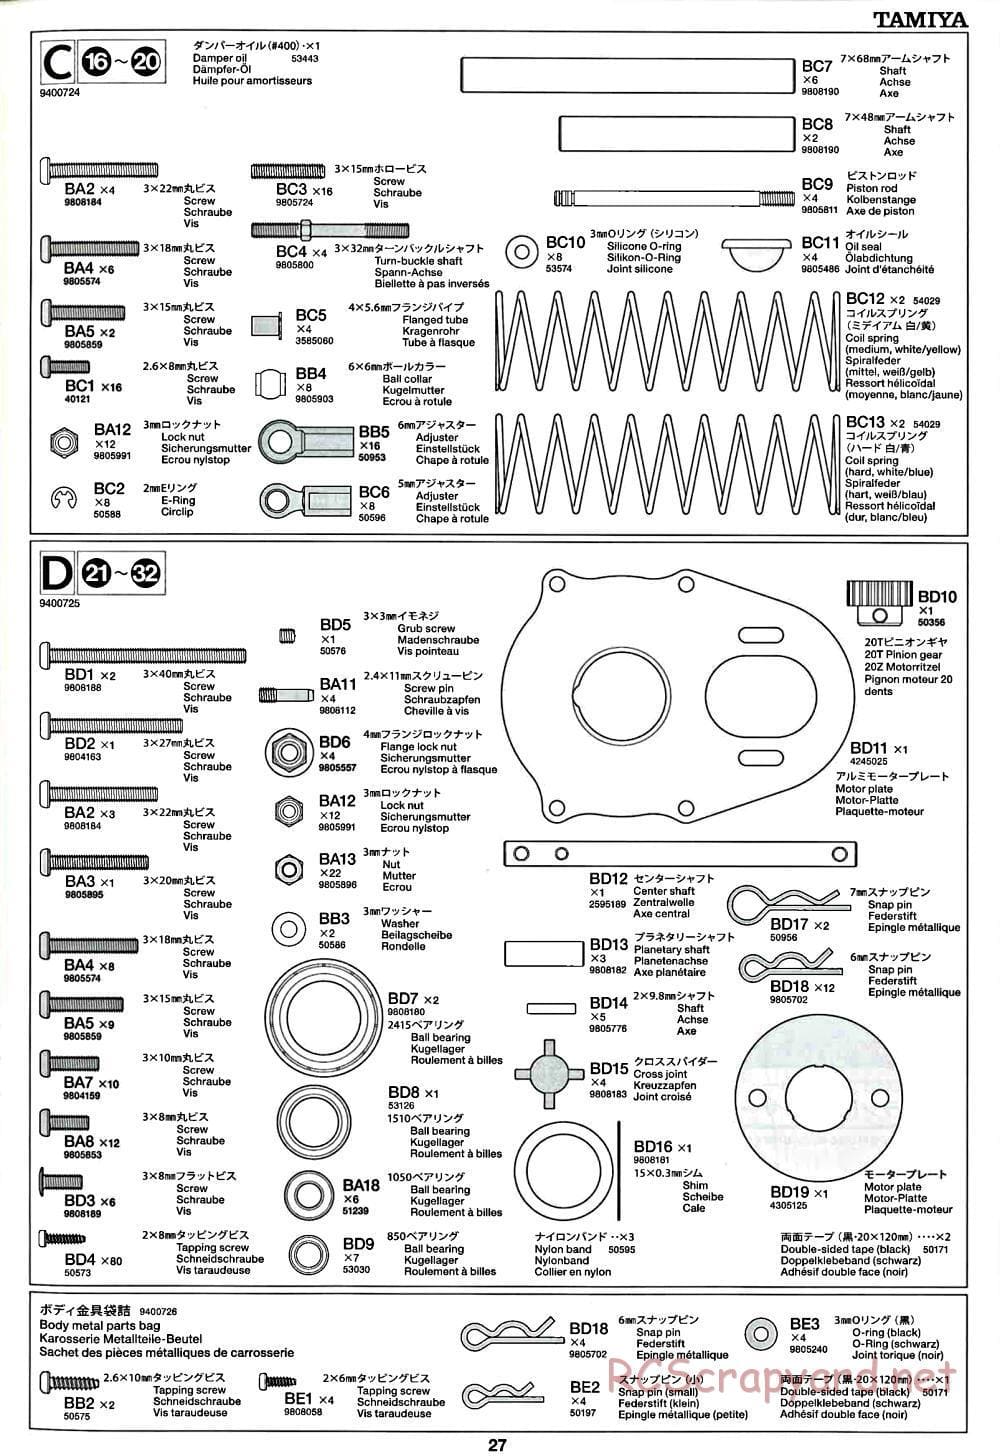 Tamiya - CR-01 Chassis - Manual - Page 27